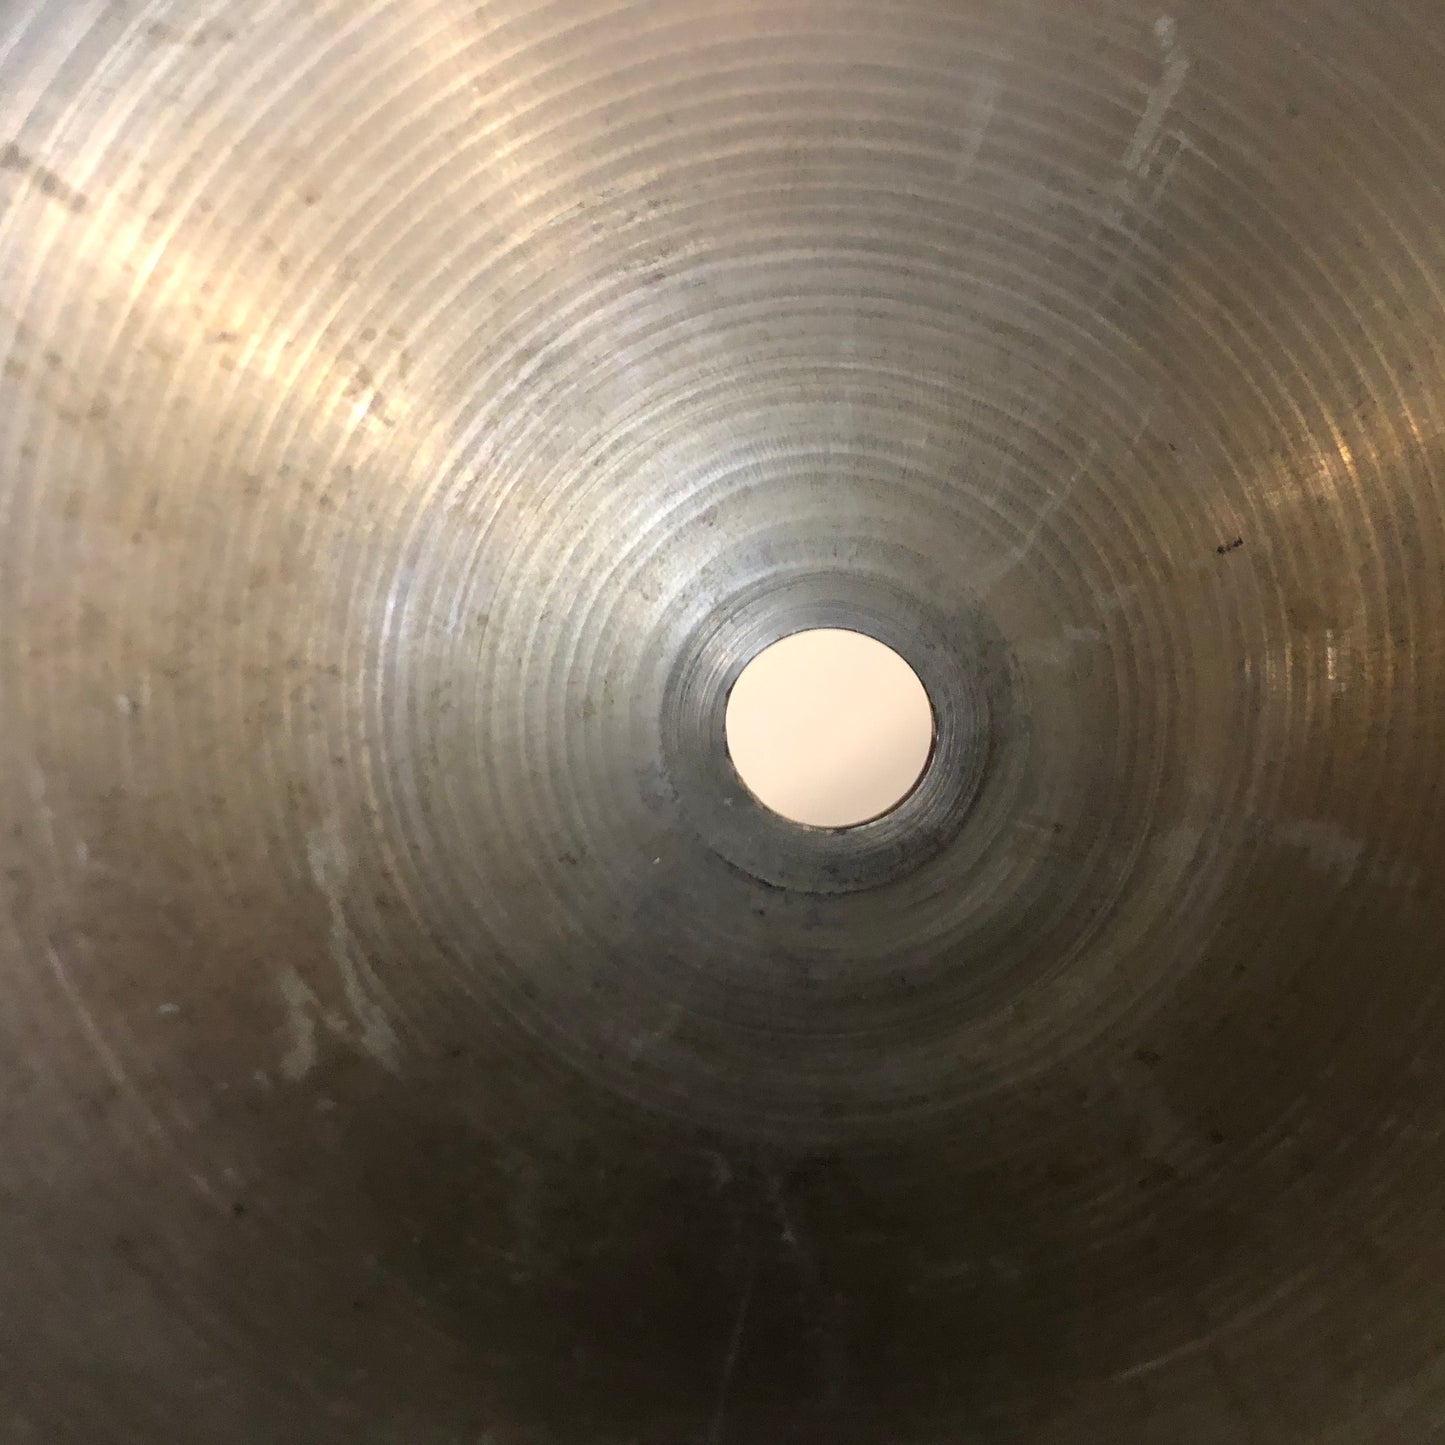 18" Zildjian A 1960s Crash Ride Cymbal 1760g #579